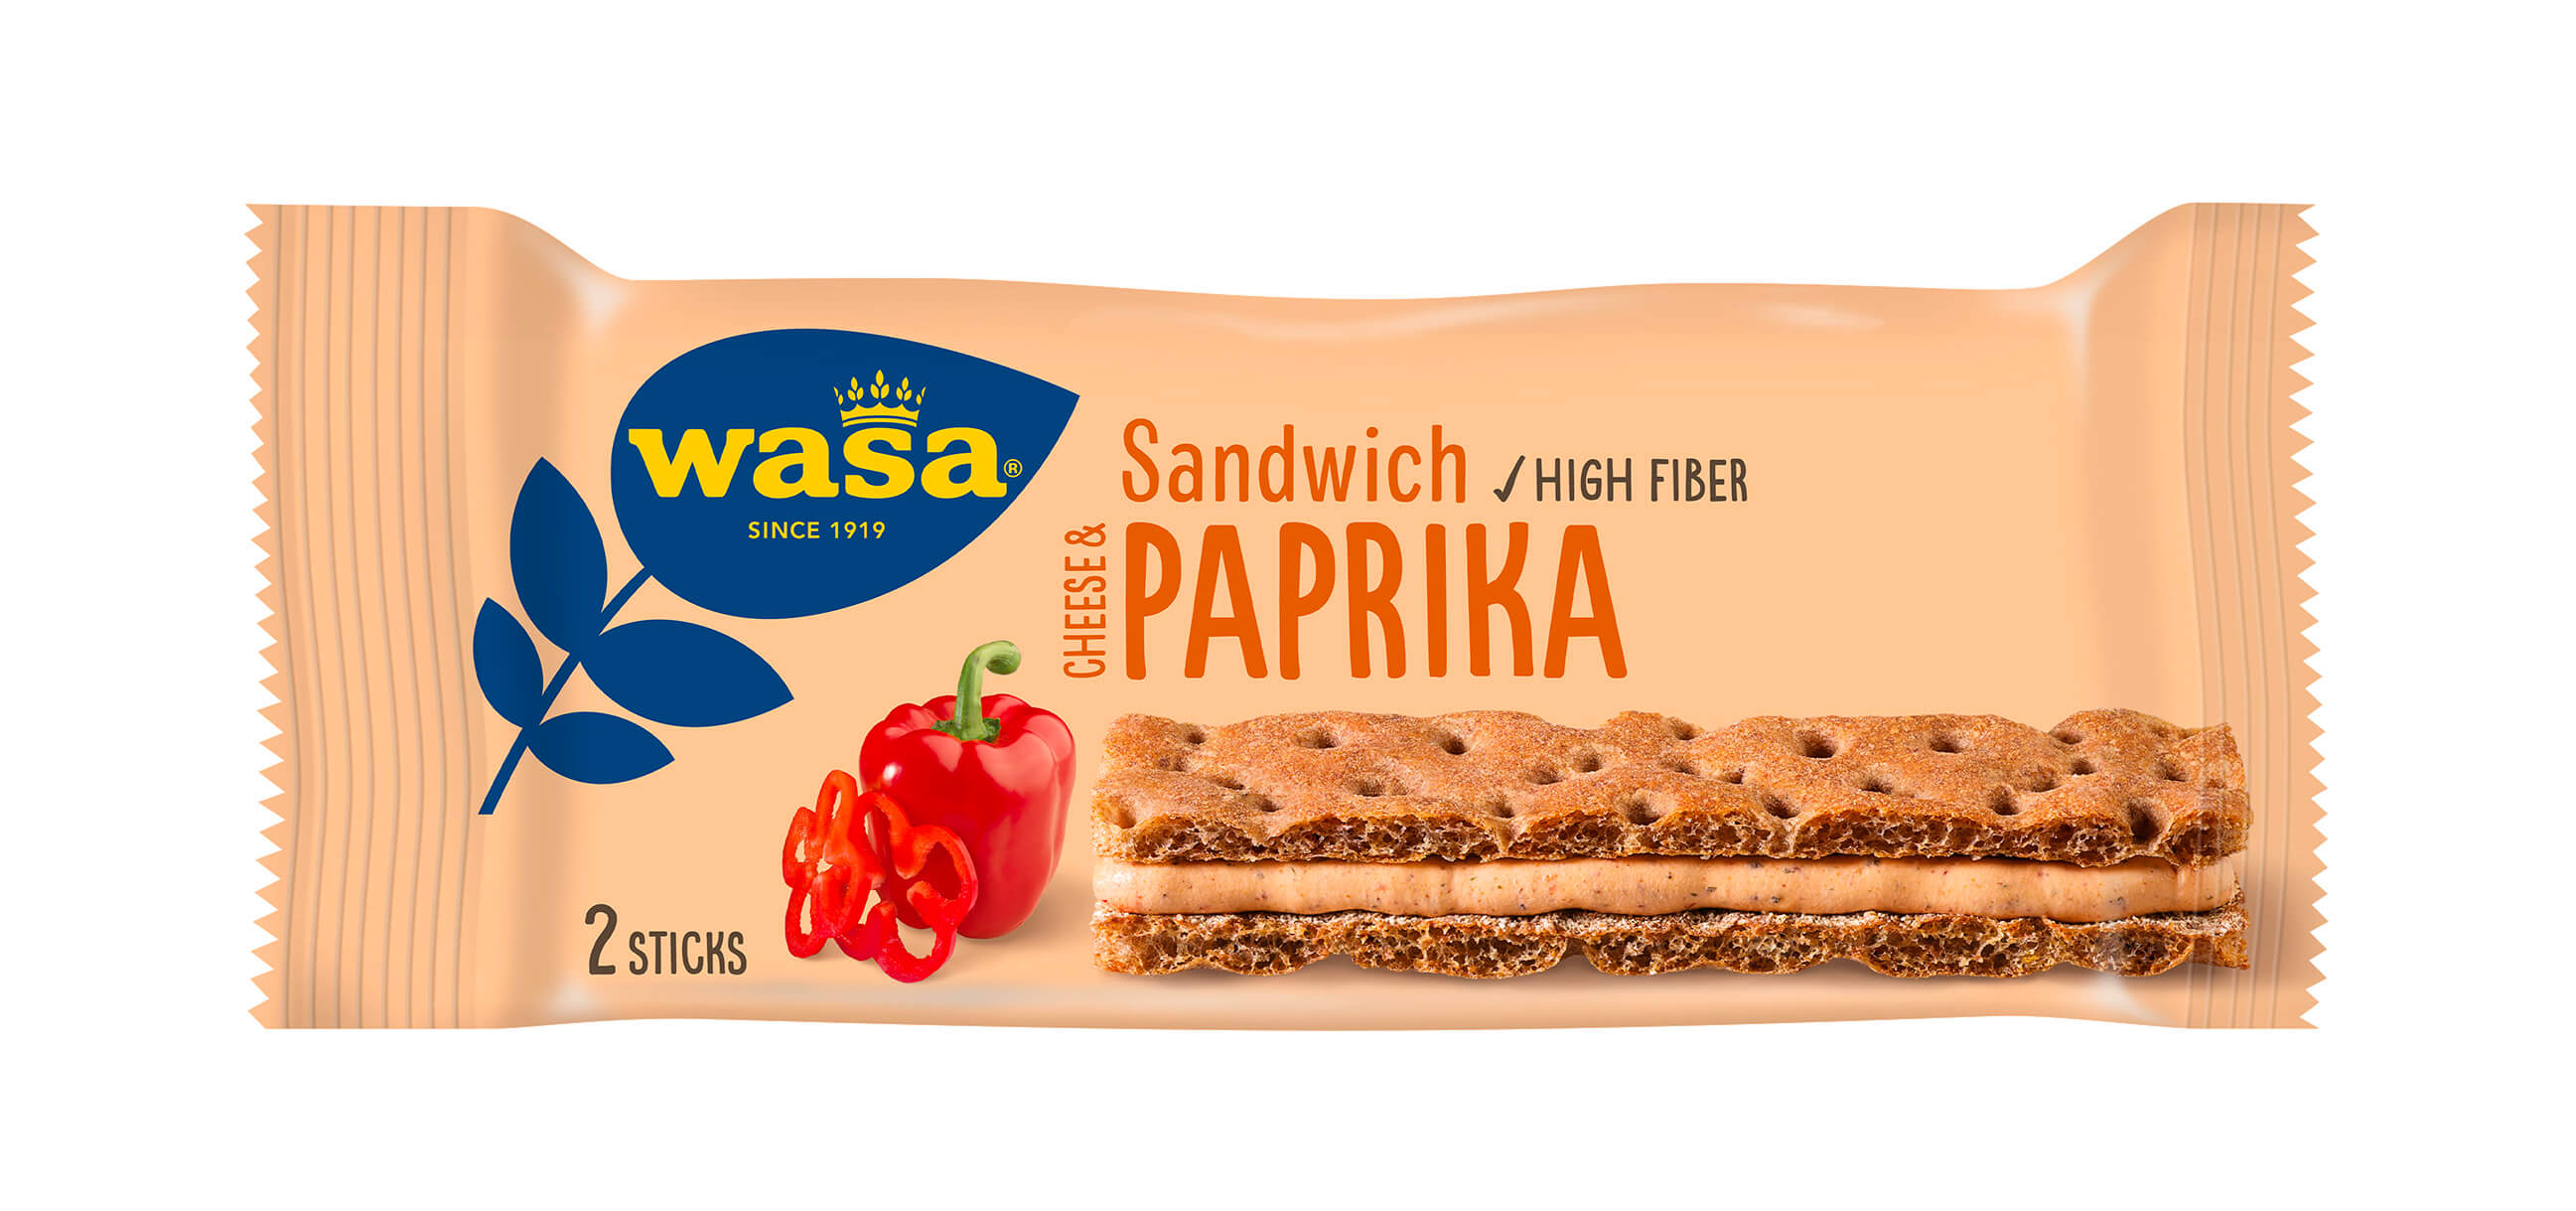 Wasa Sandwich Cheese & Paprika - Upptäck det perfekta mellanmålet, gott knäckebröd med krämig fyllning. Utmärkt som ett lätt mellanmål på språng - perfekt för dig som söker tips på matiga mellanmål för barn och vuxna